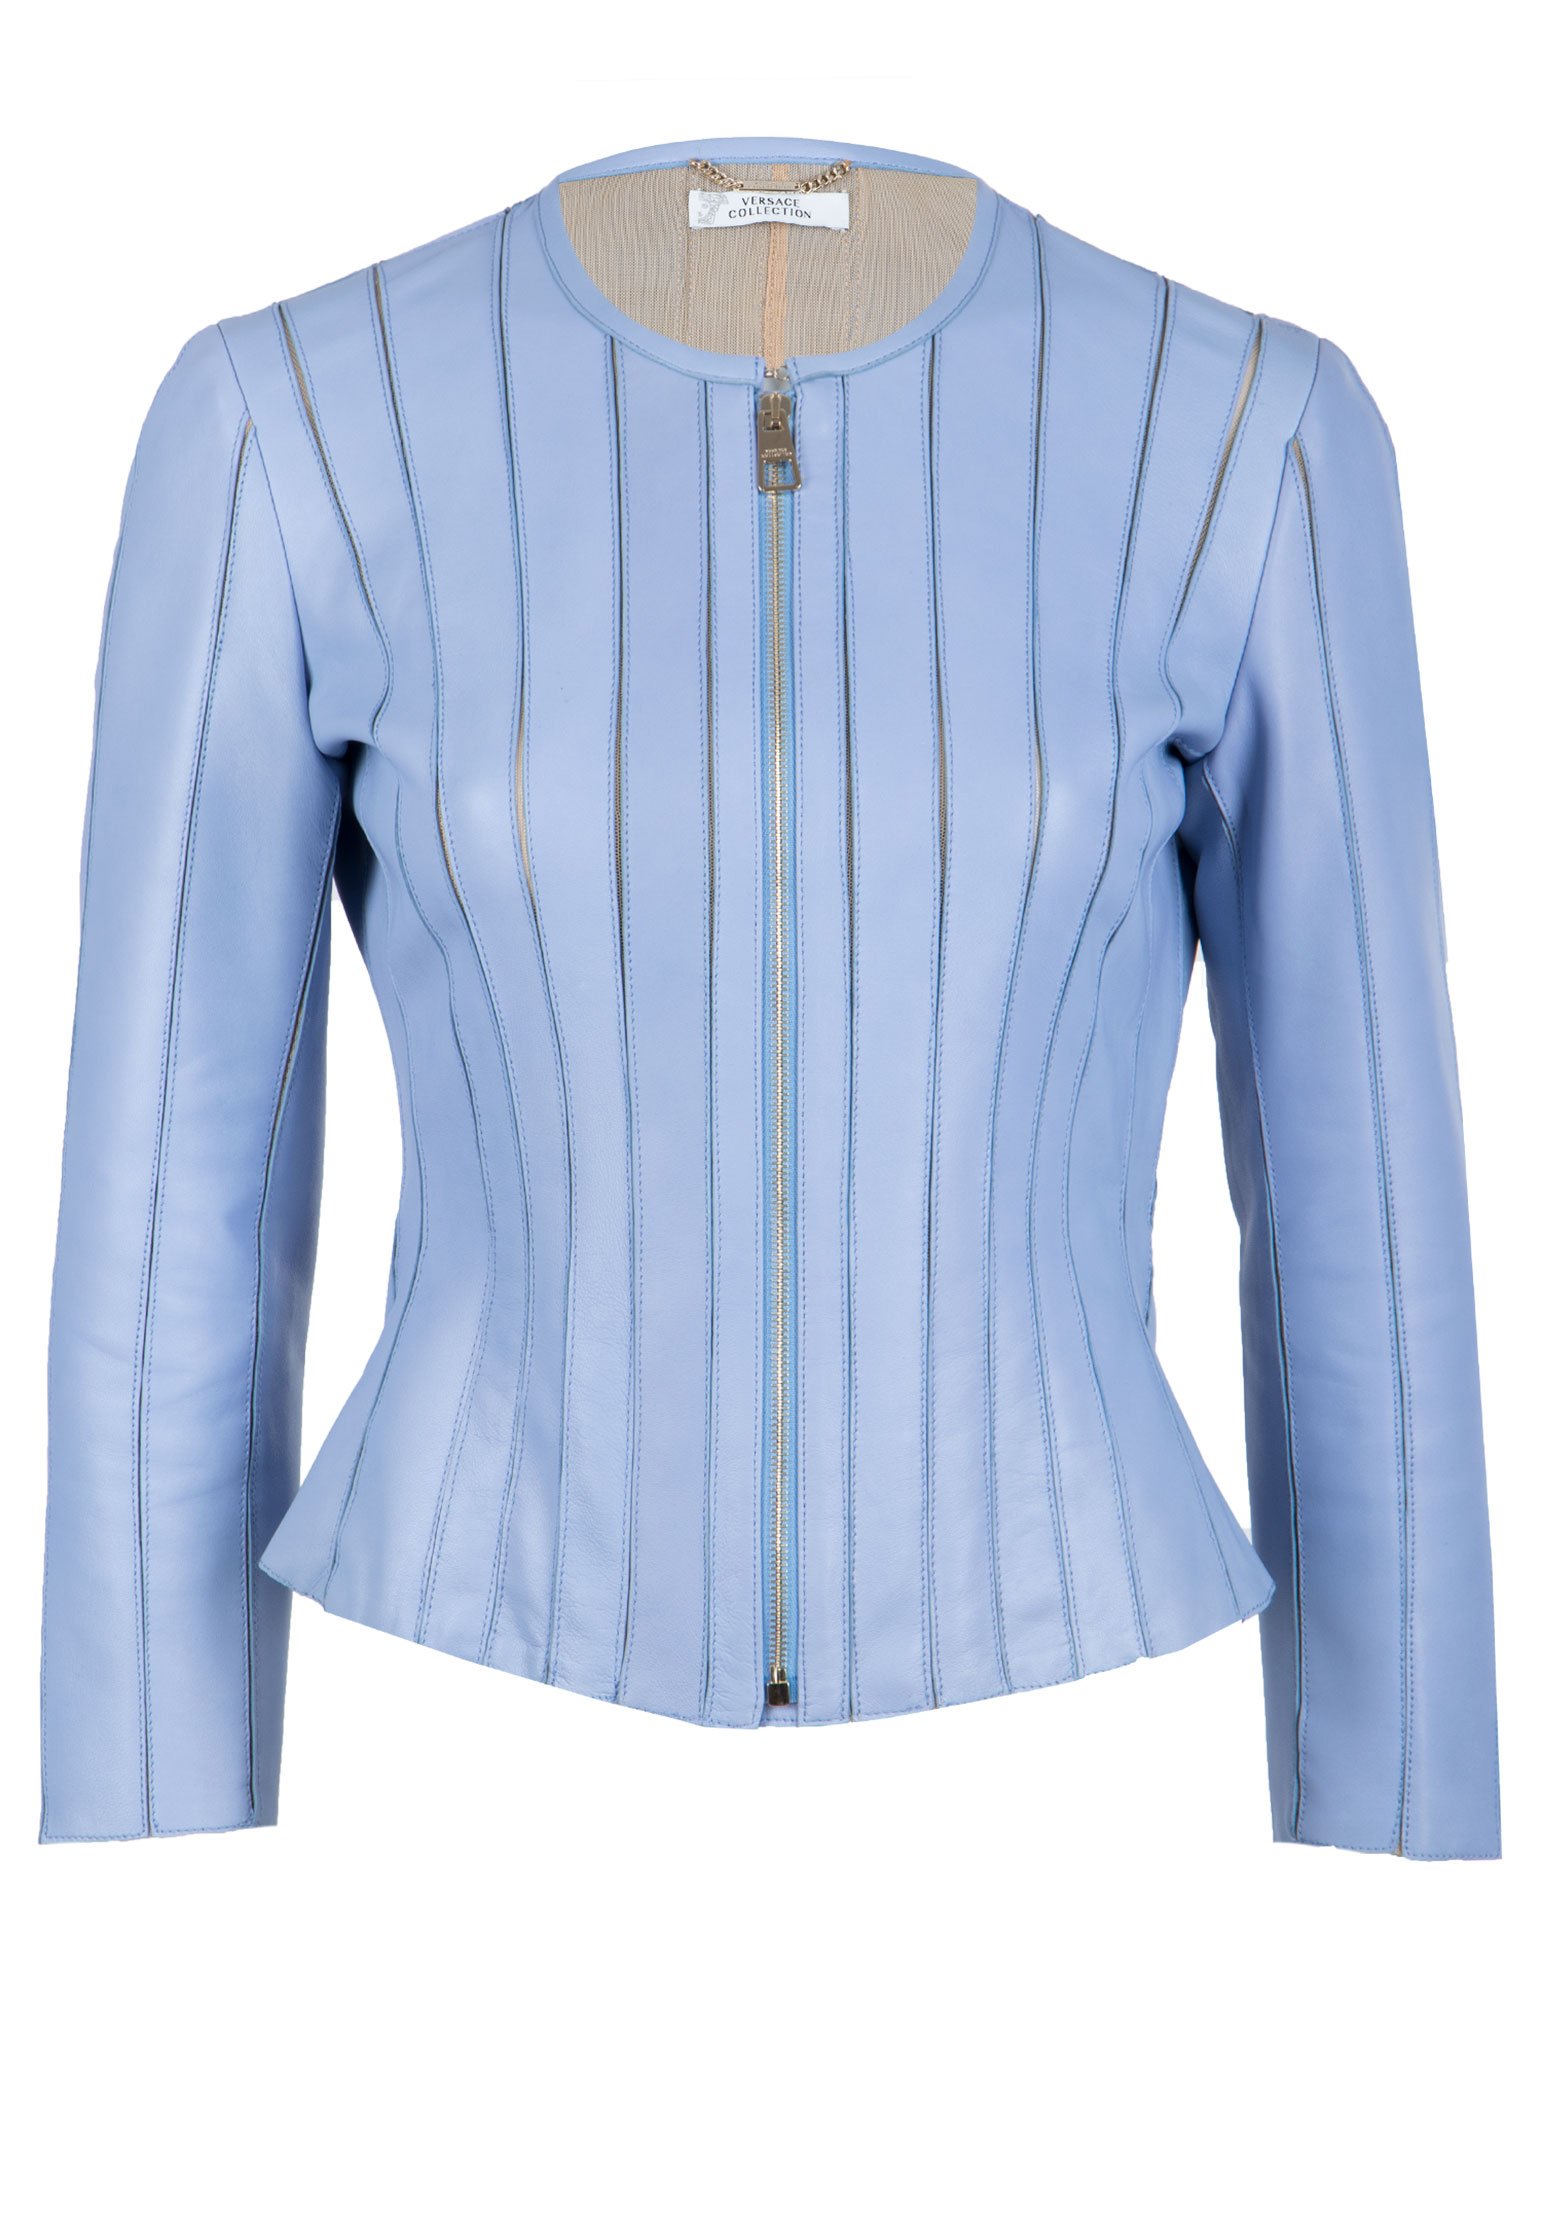 Кожаная куртка женская Versace Collection 106260 голубая 42 IT